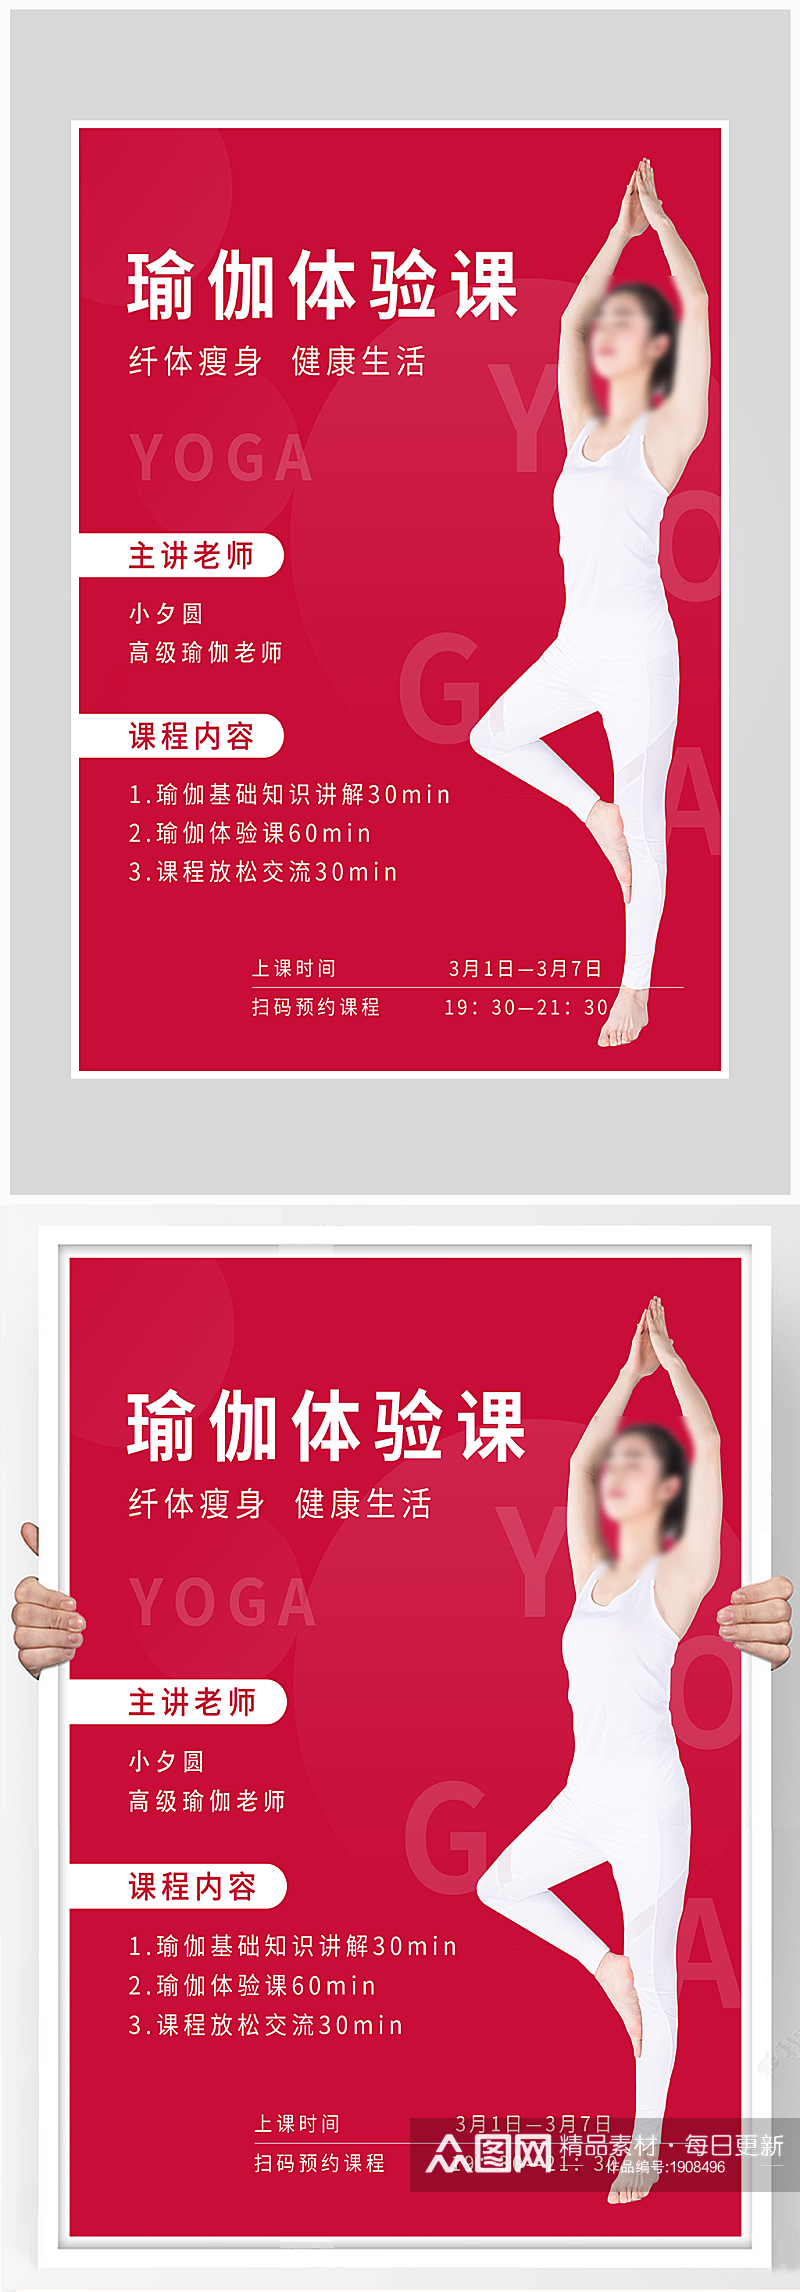 创意质感红色大气瑜伽体验课海报设计素材